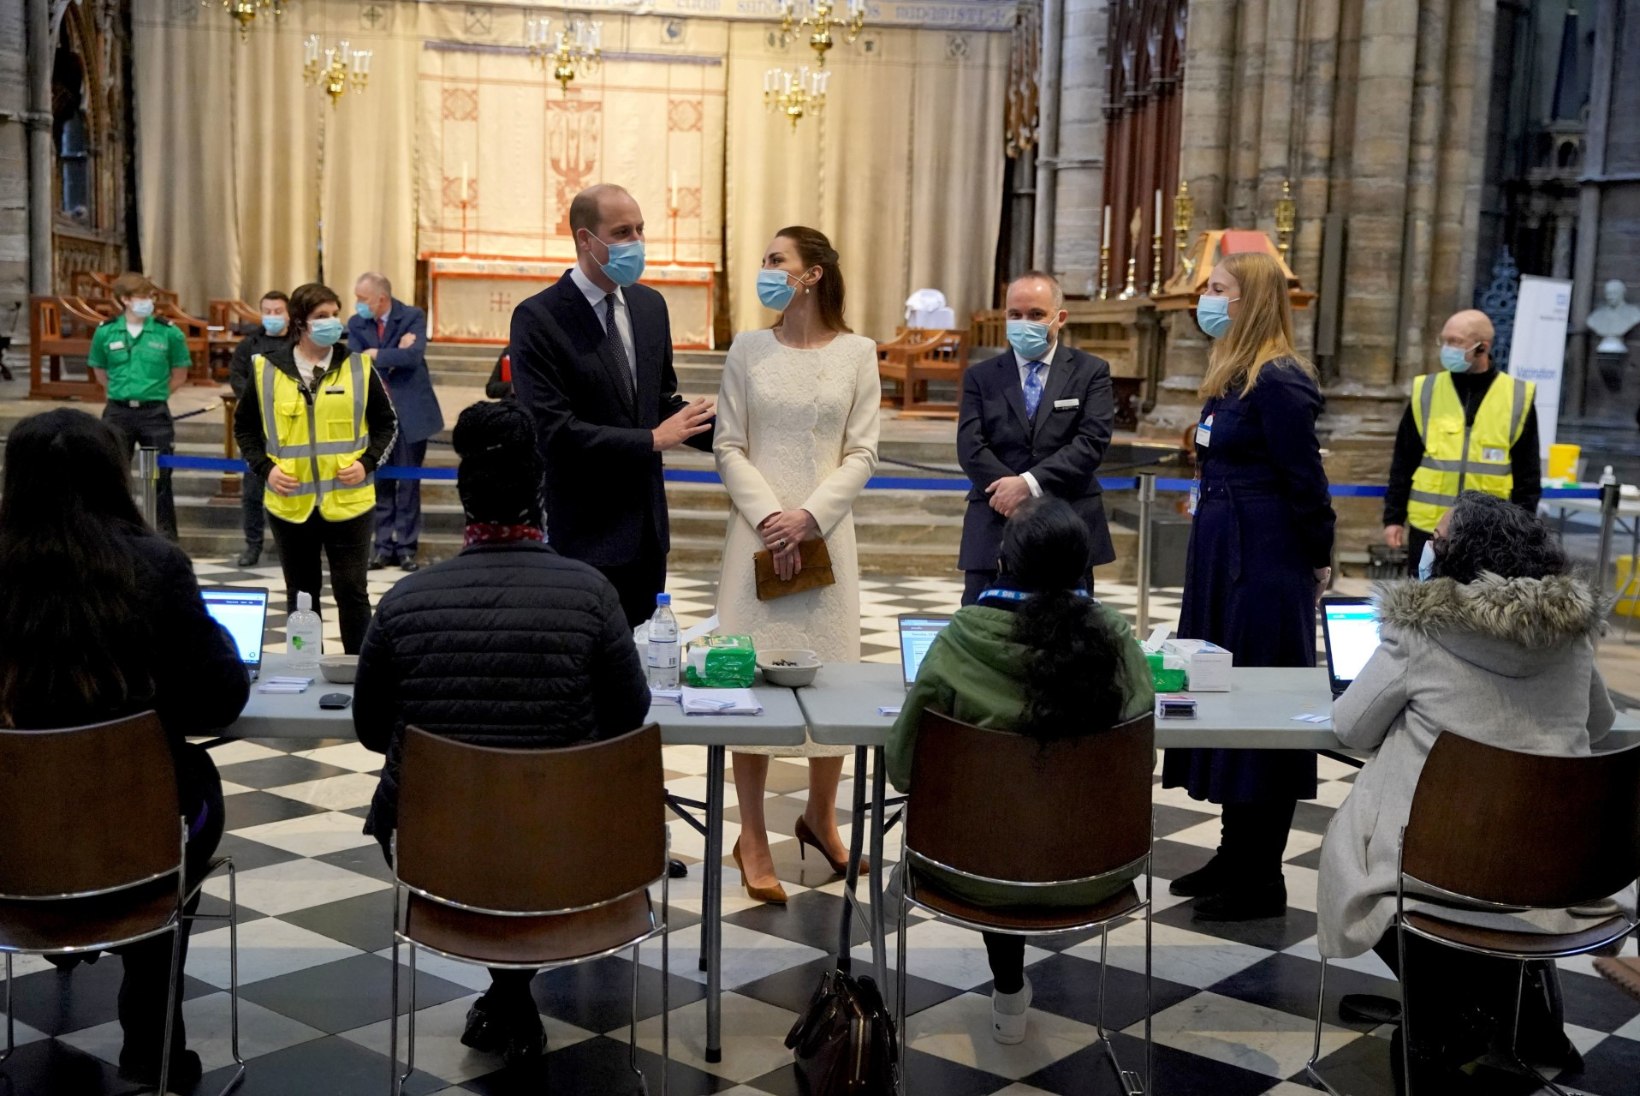 VIDEO | Prints William ja Kate külastasid oma pulmapaika – kuid õige erilisel põhjusel